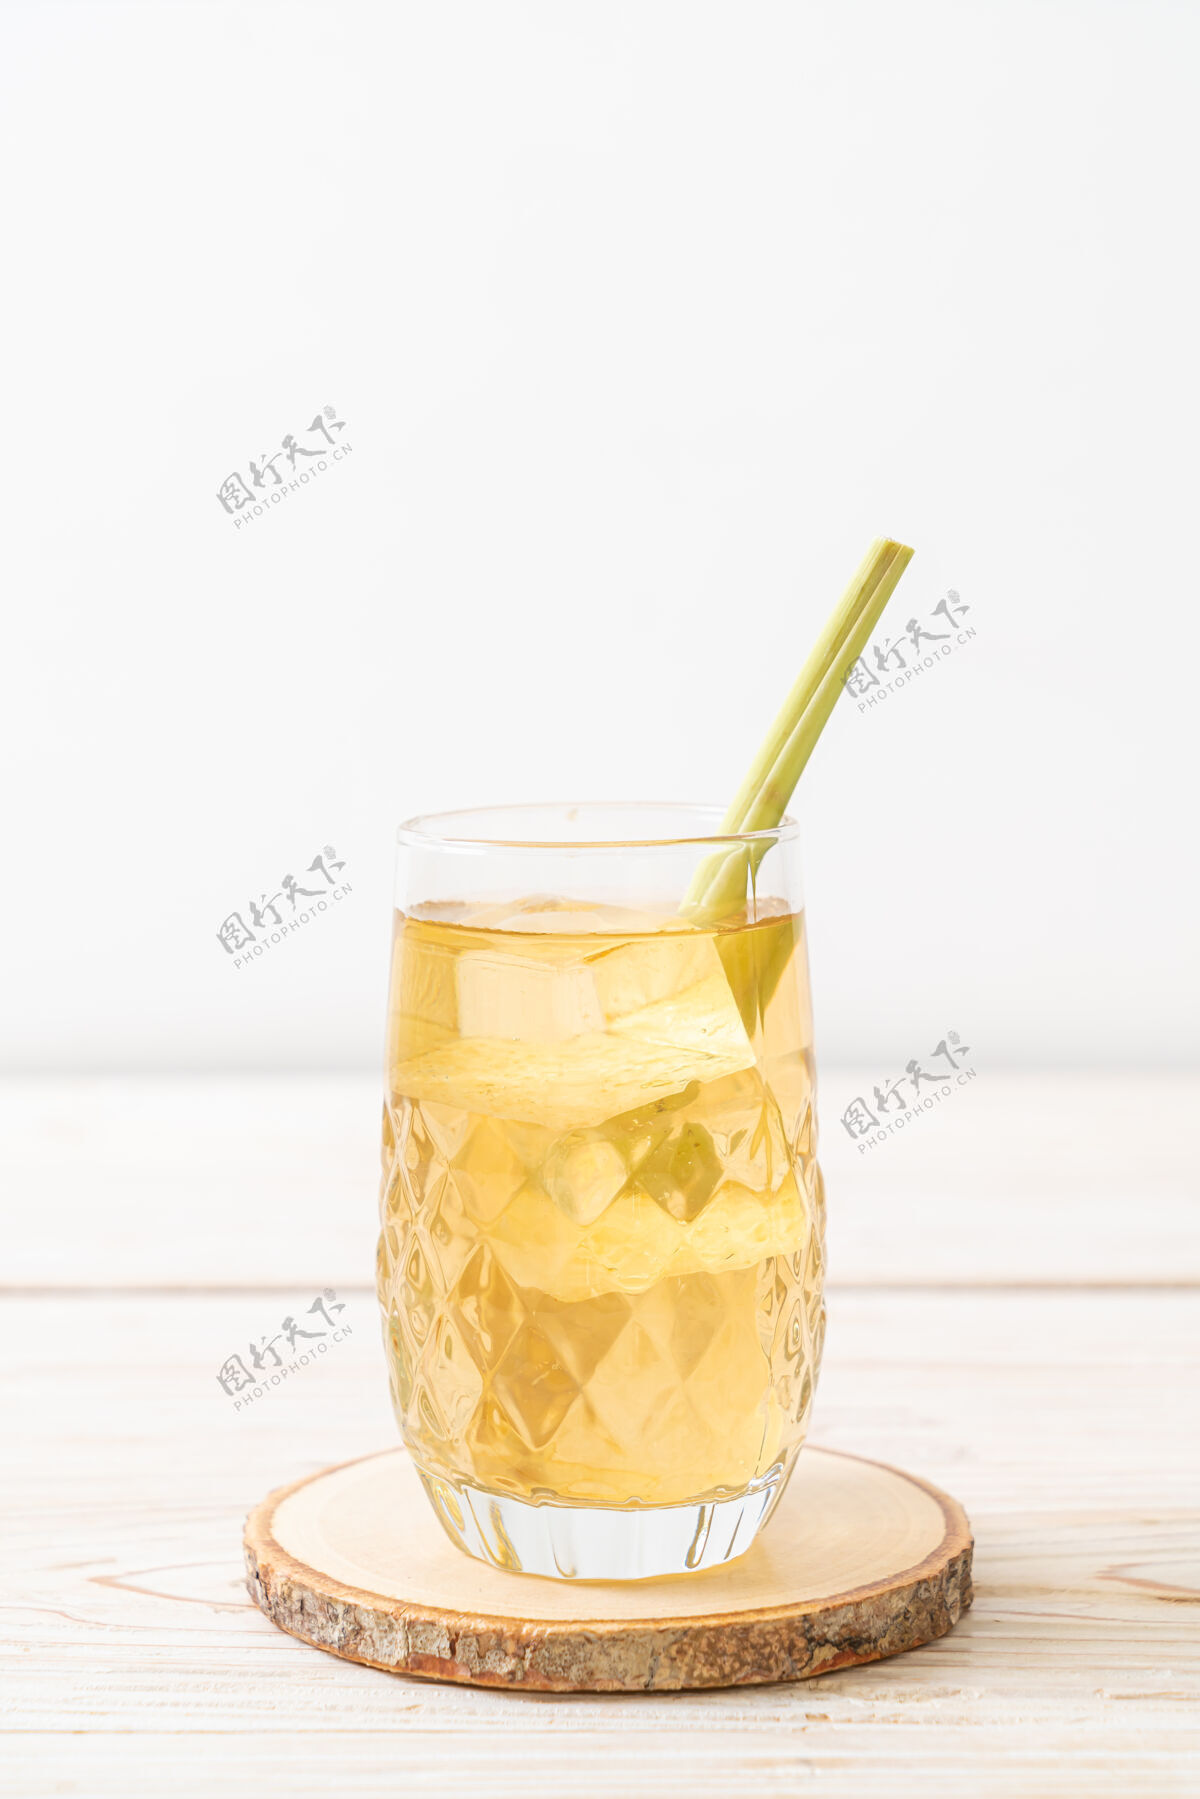 绿色冰柠檬草汁在木头上饮料多汁草